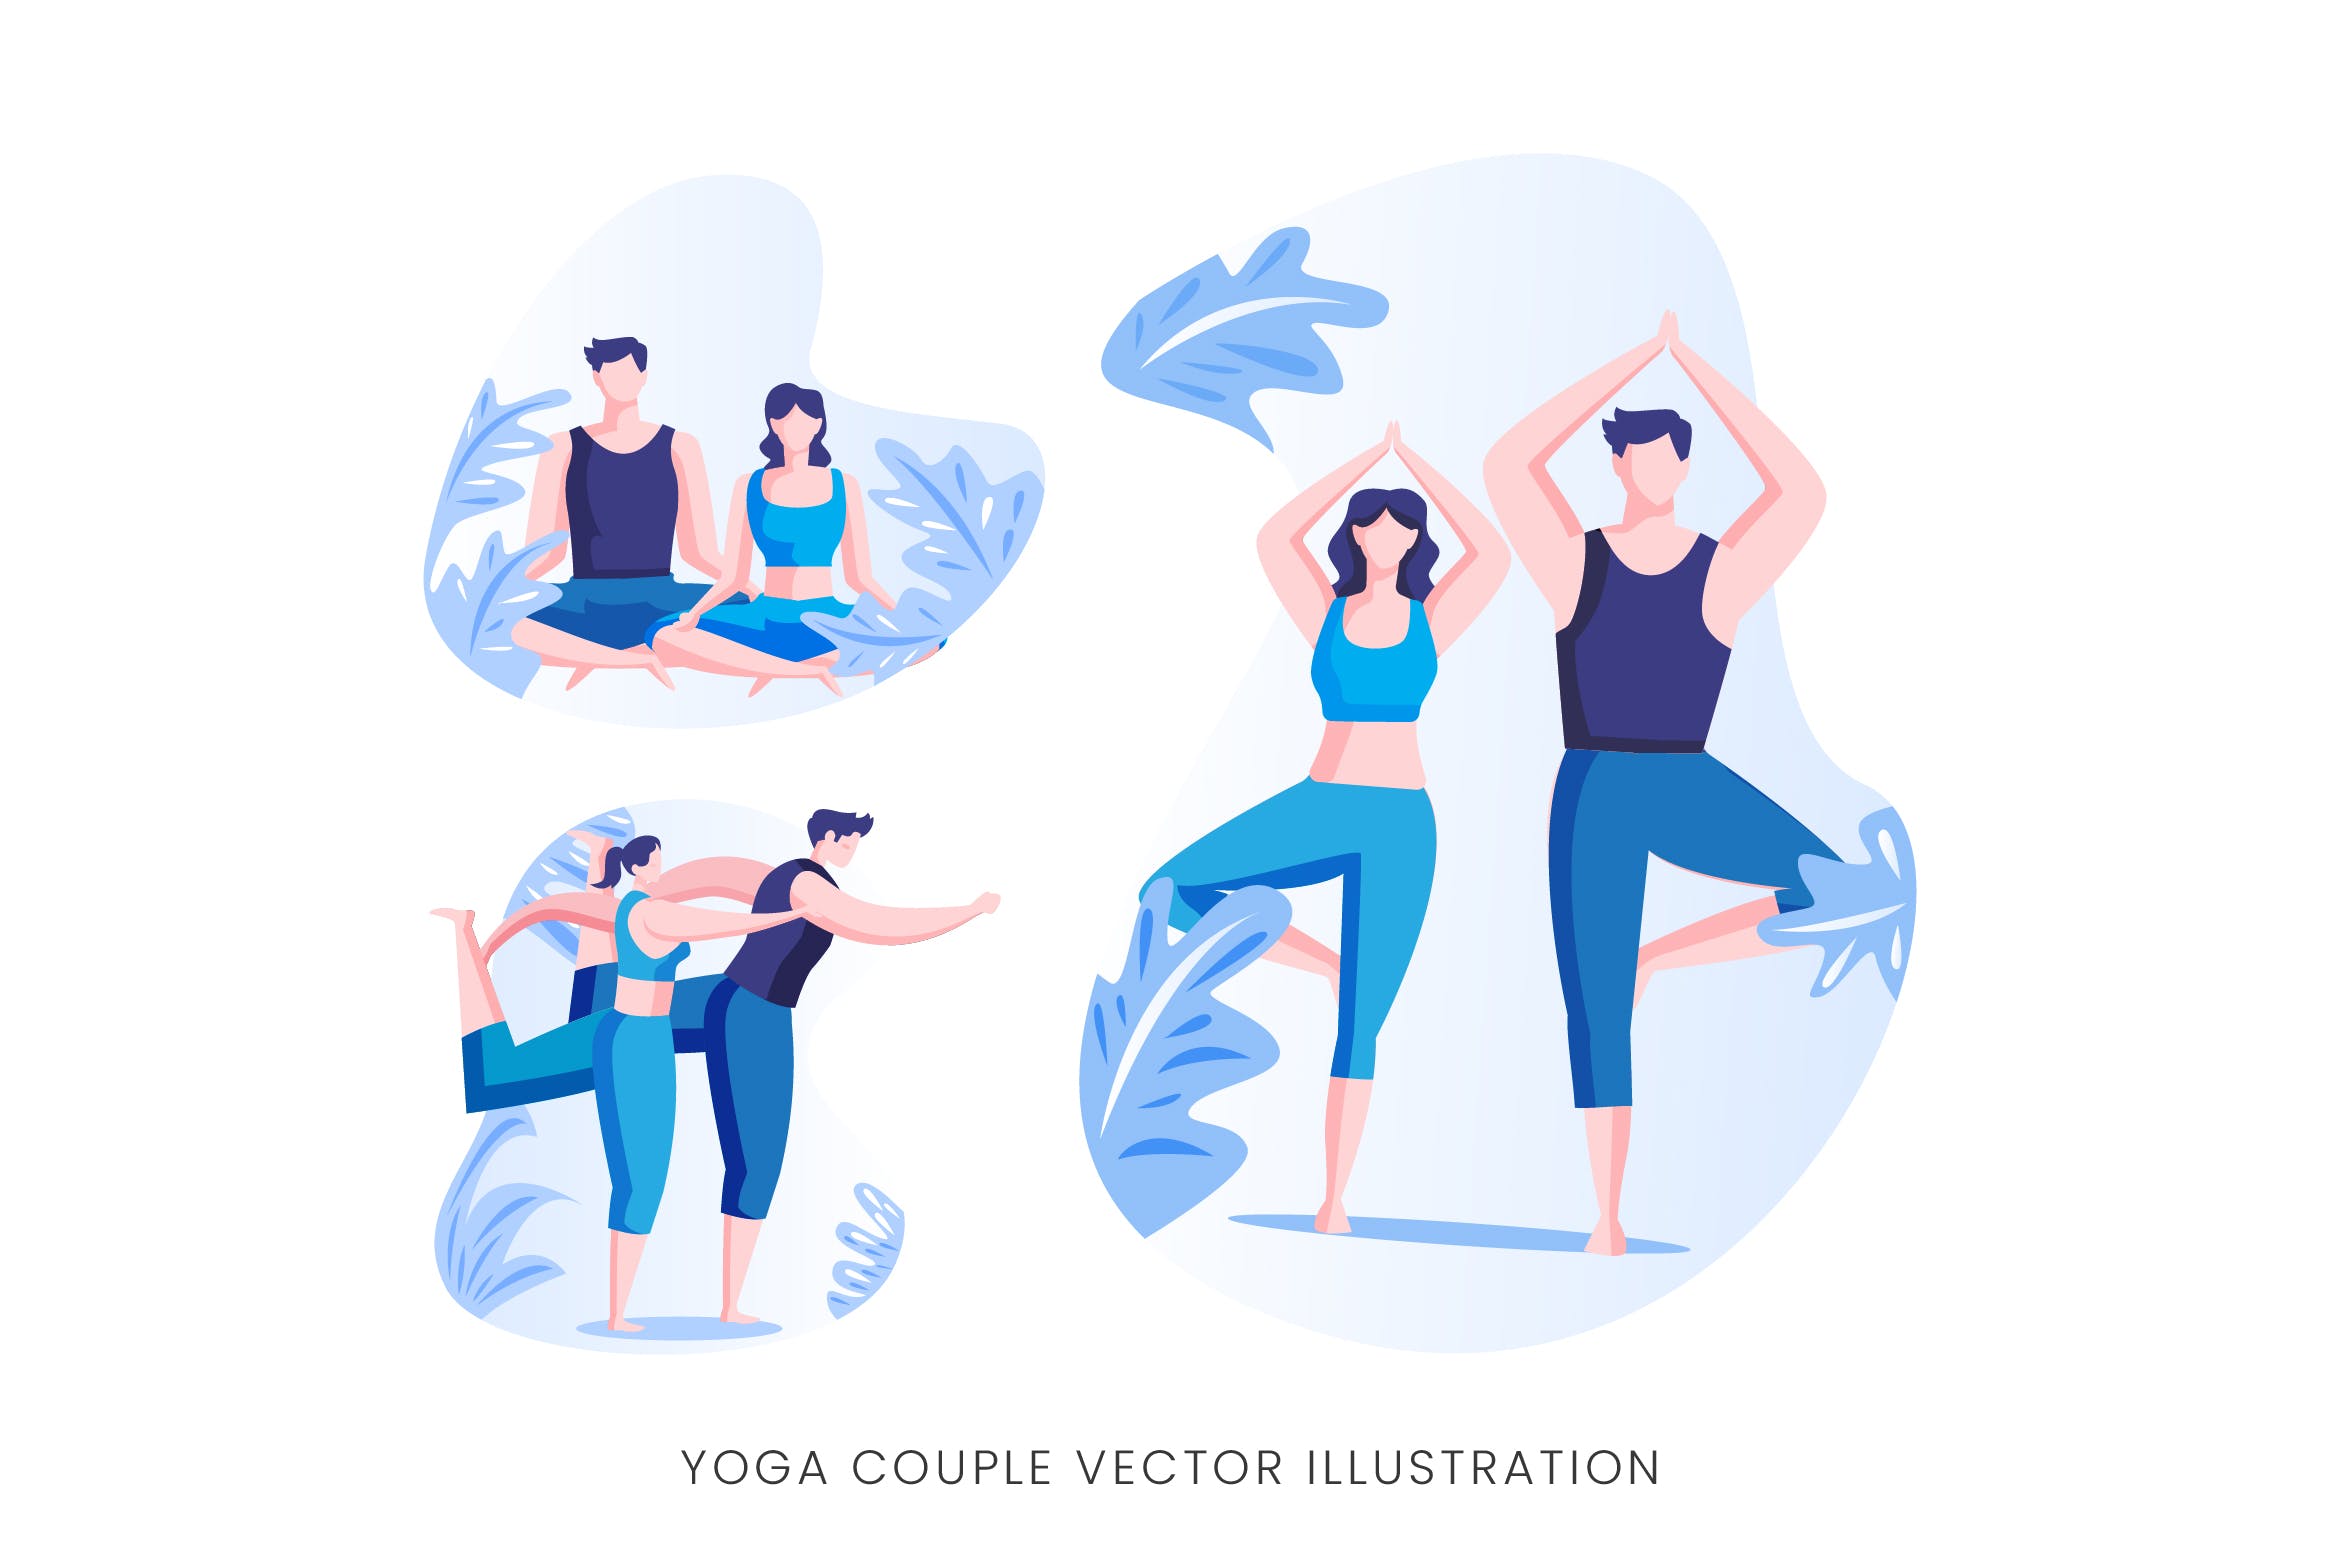 瑜珈情侣人物形象矢量手绘普贤居精选设计素材 Yoga Couple Vector Character Set插图